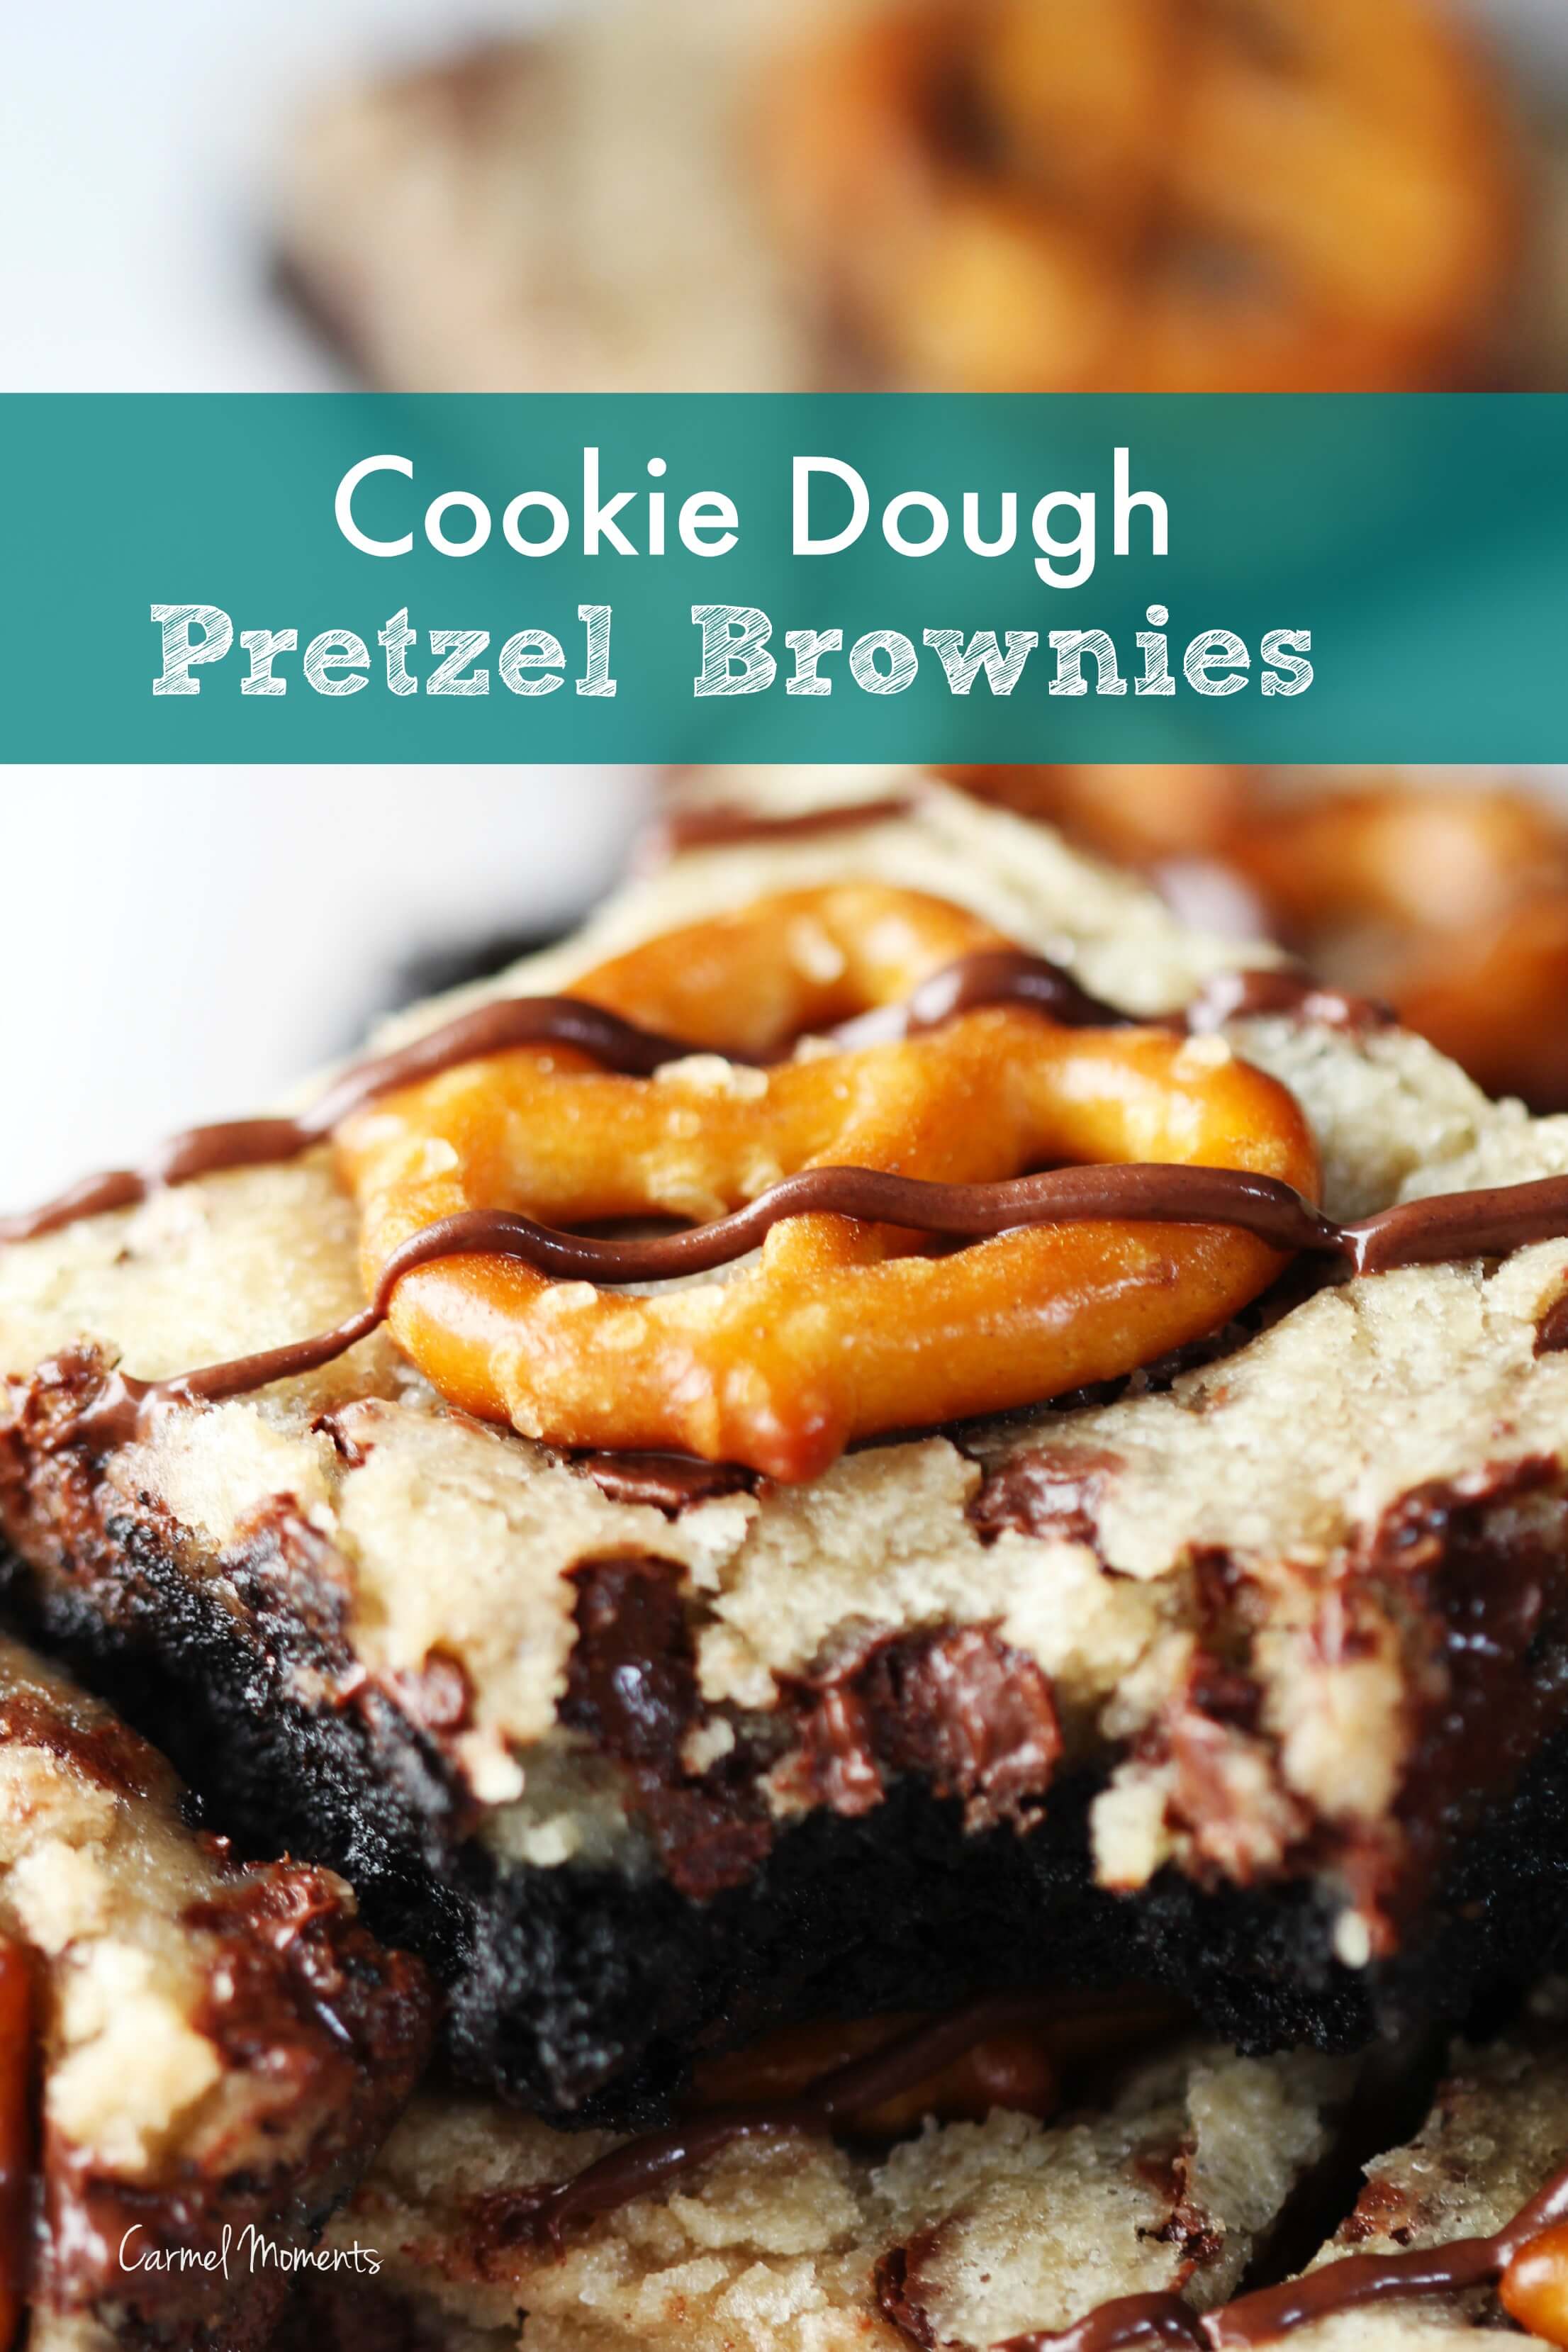 Cookie Dough Pretzel Brownies